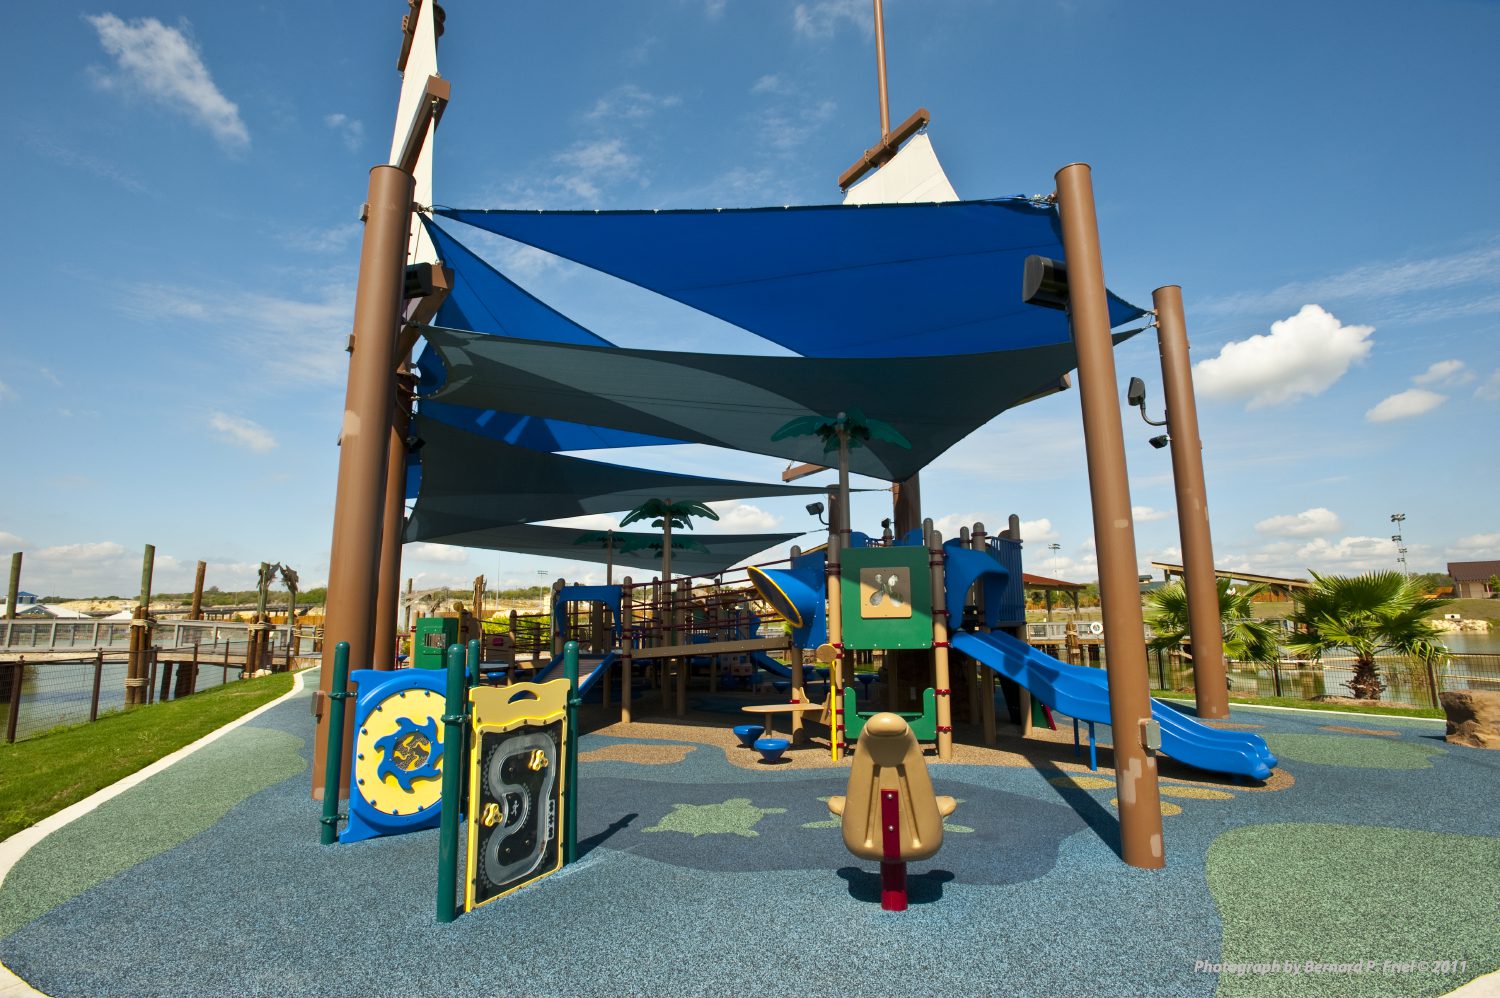 Morgan's playground area